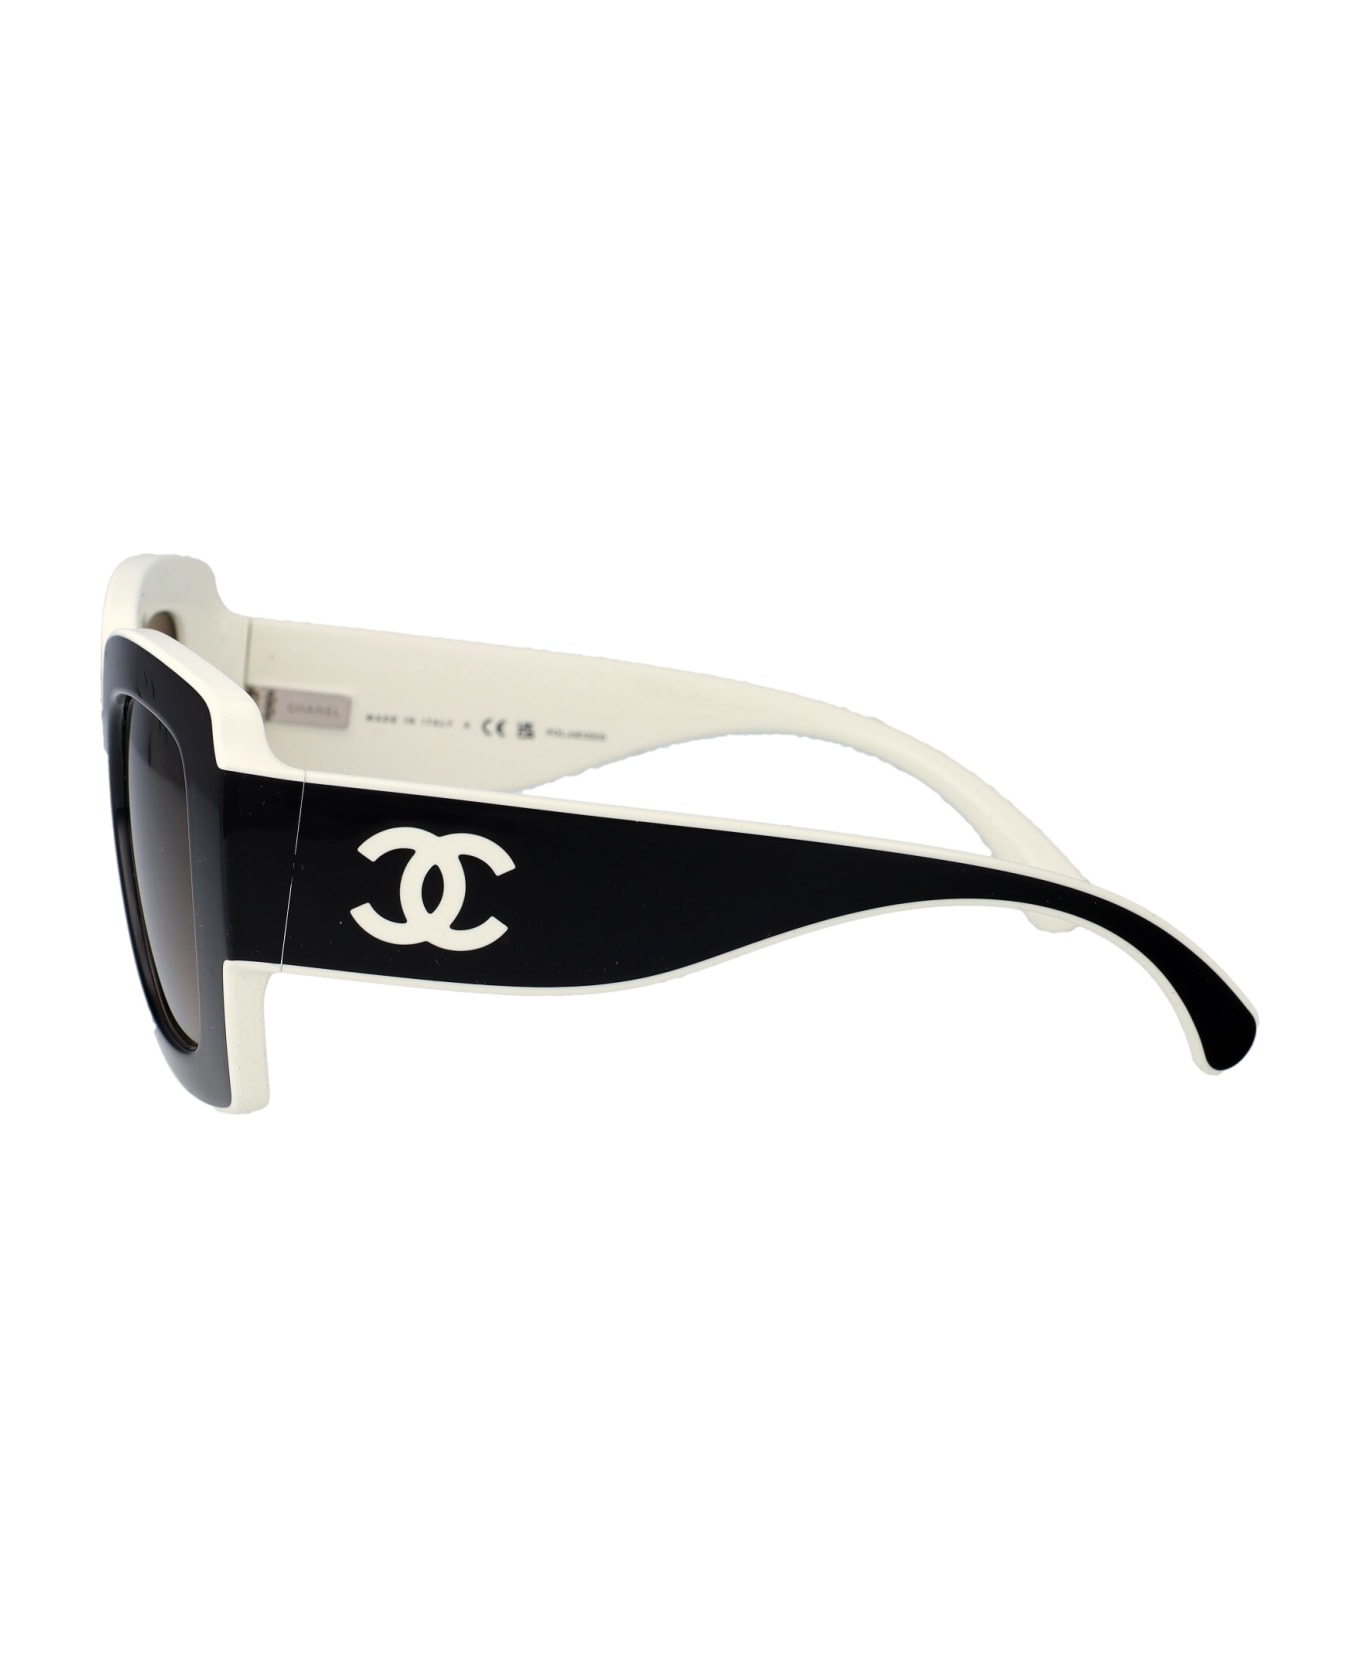 Chanel 0ch6059 Sunglasses - 1656M2 BLACK